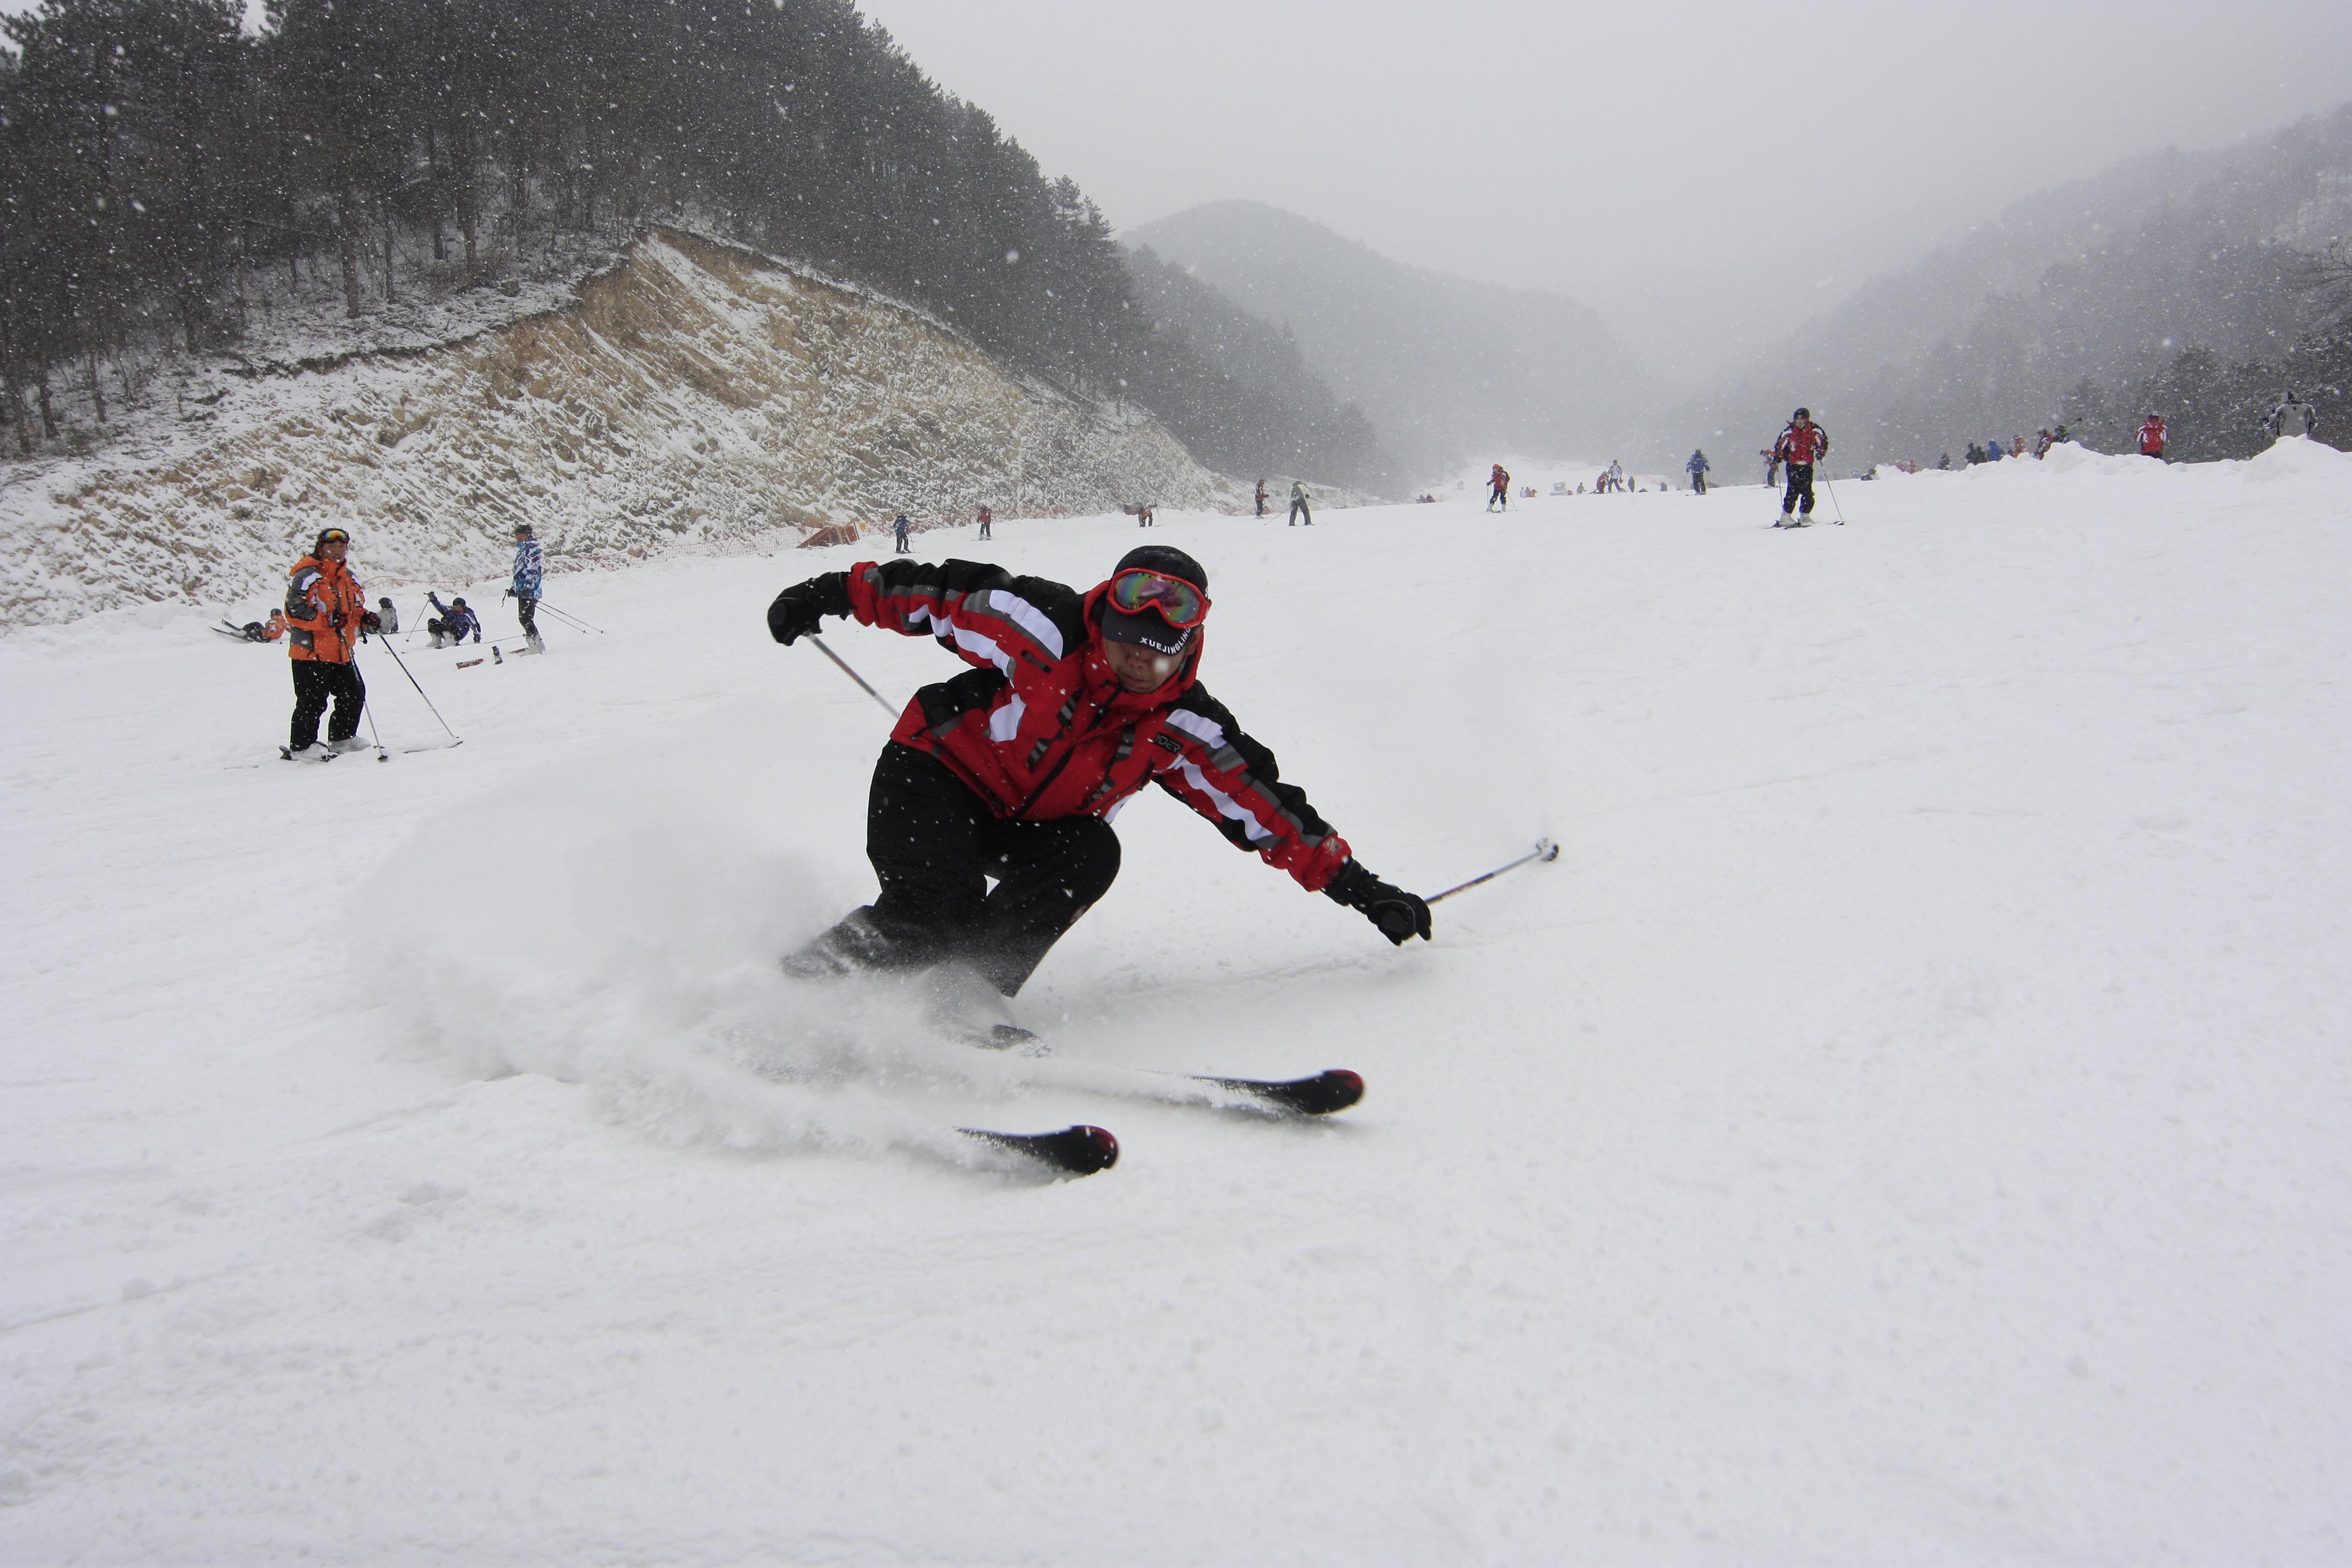 【携程攻略】杭州大明山万松岭滑雪场景点,74号双板教练真的超级可以，好看又专业，很耐心，技术很好。下次还会…